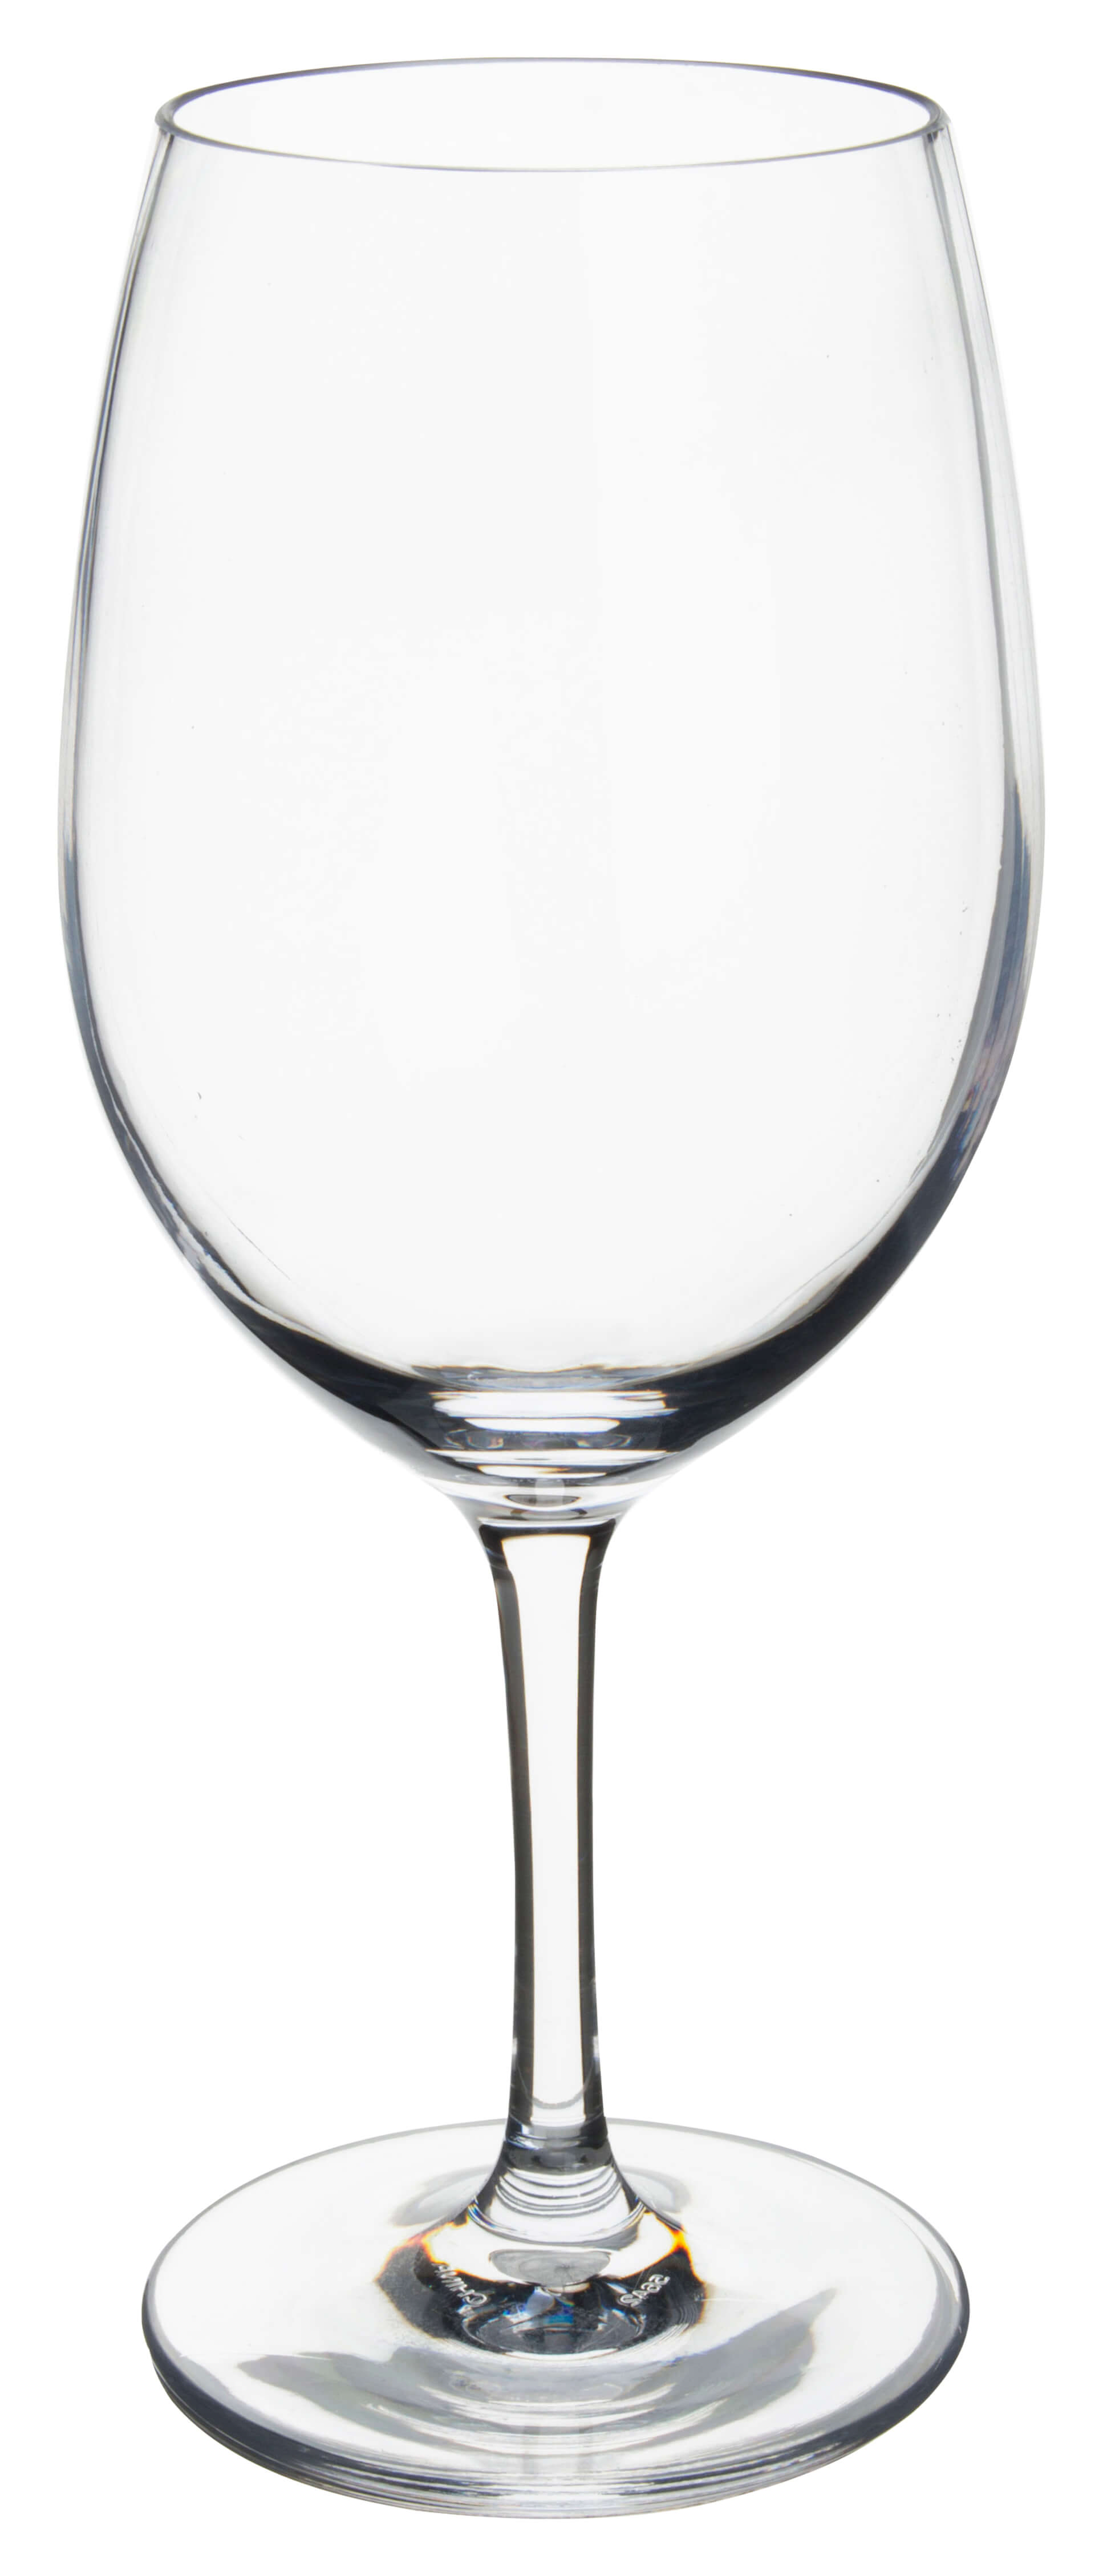 Rotweinglas Alibi Carlisle, Kunststoff - 590ml (1 Stk.)